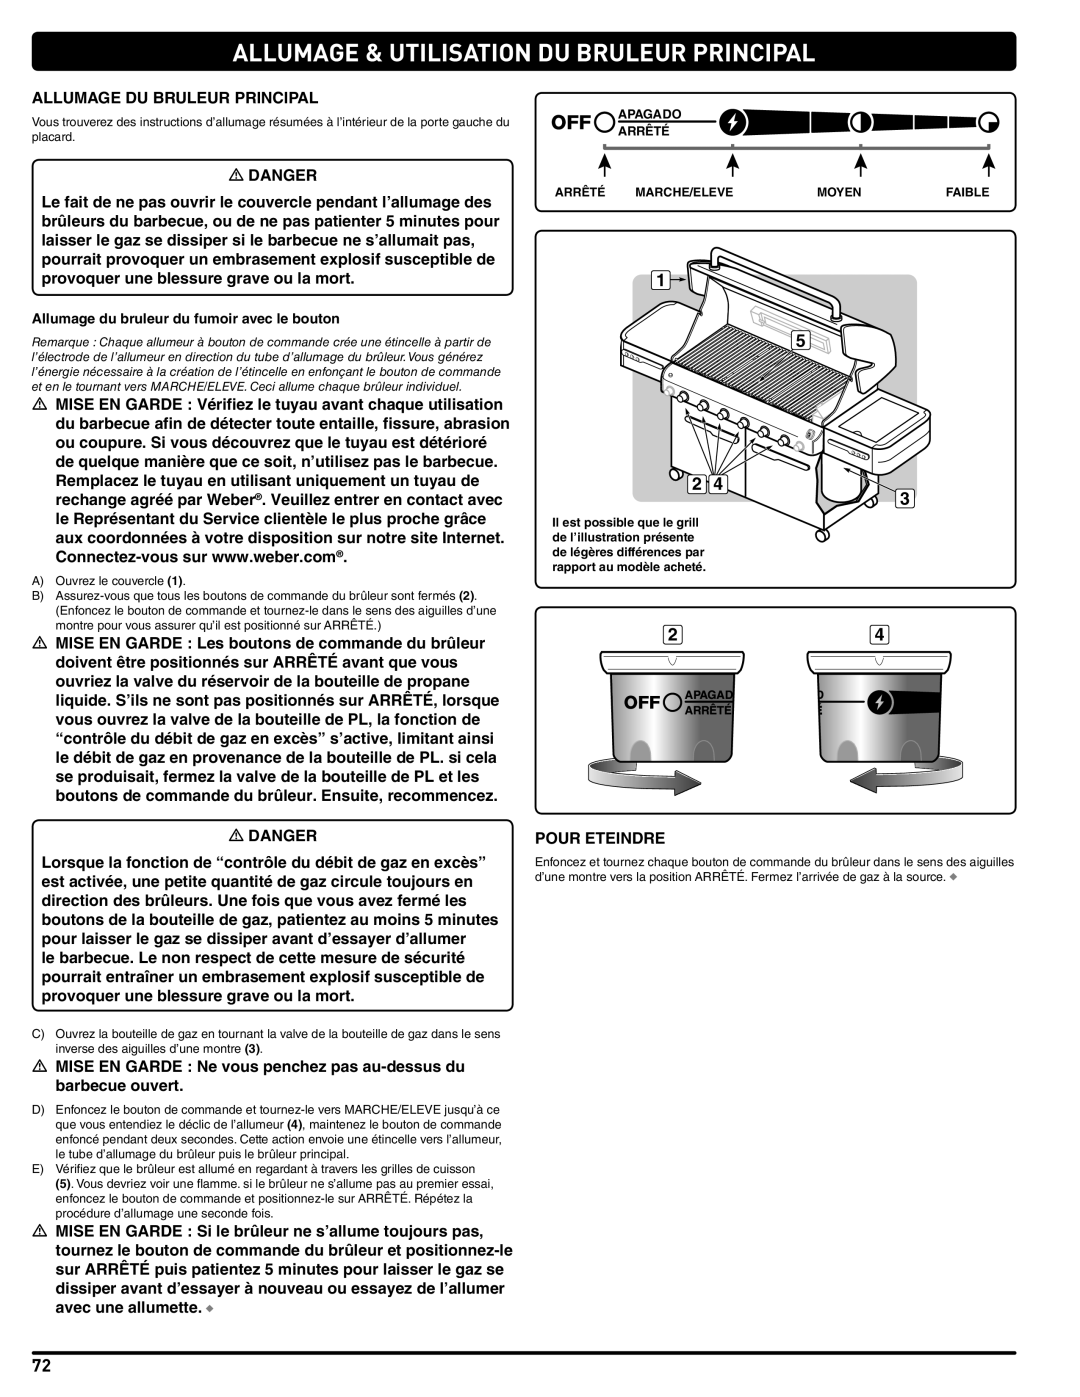 Summit 56214 manual Allumage & Utilisation Du Bruleur Principal, Allumage du bruleur du fumoir avec le bouton 